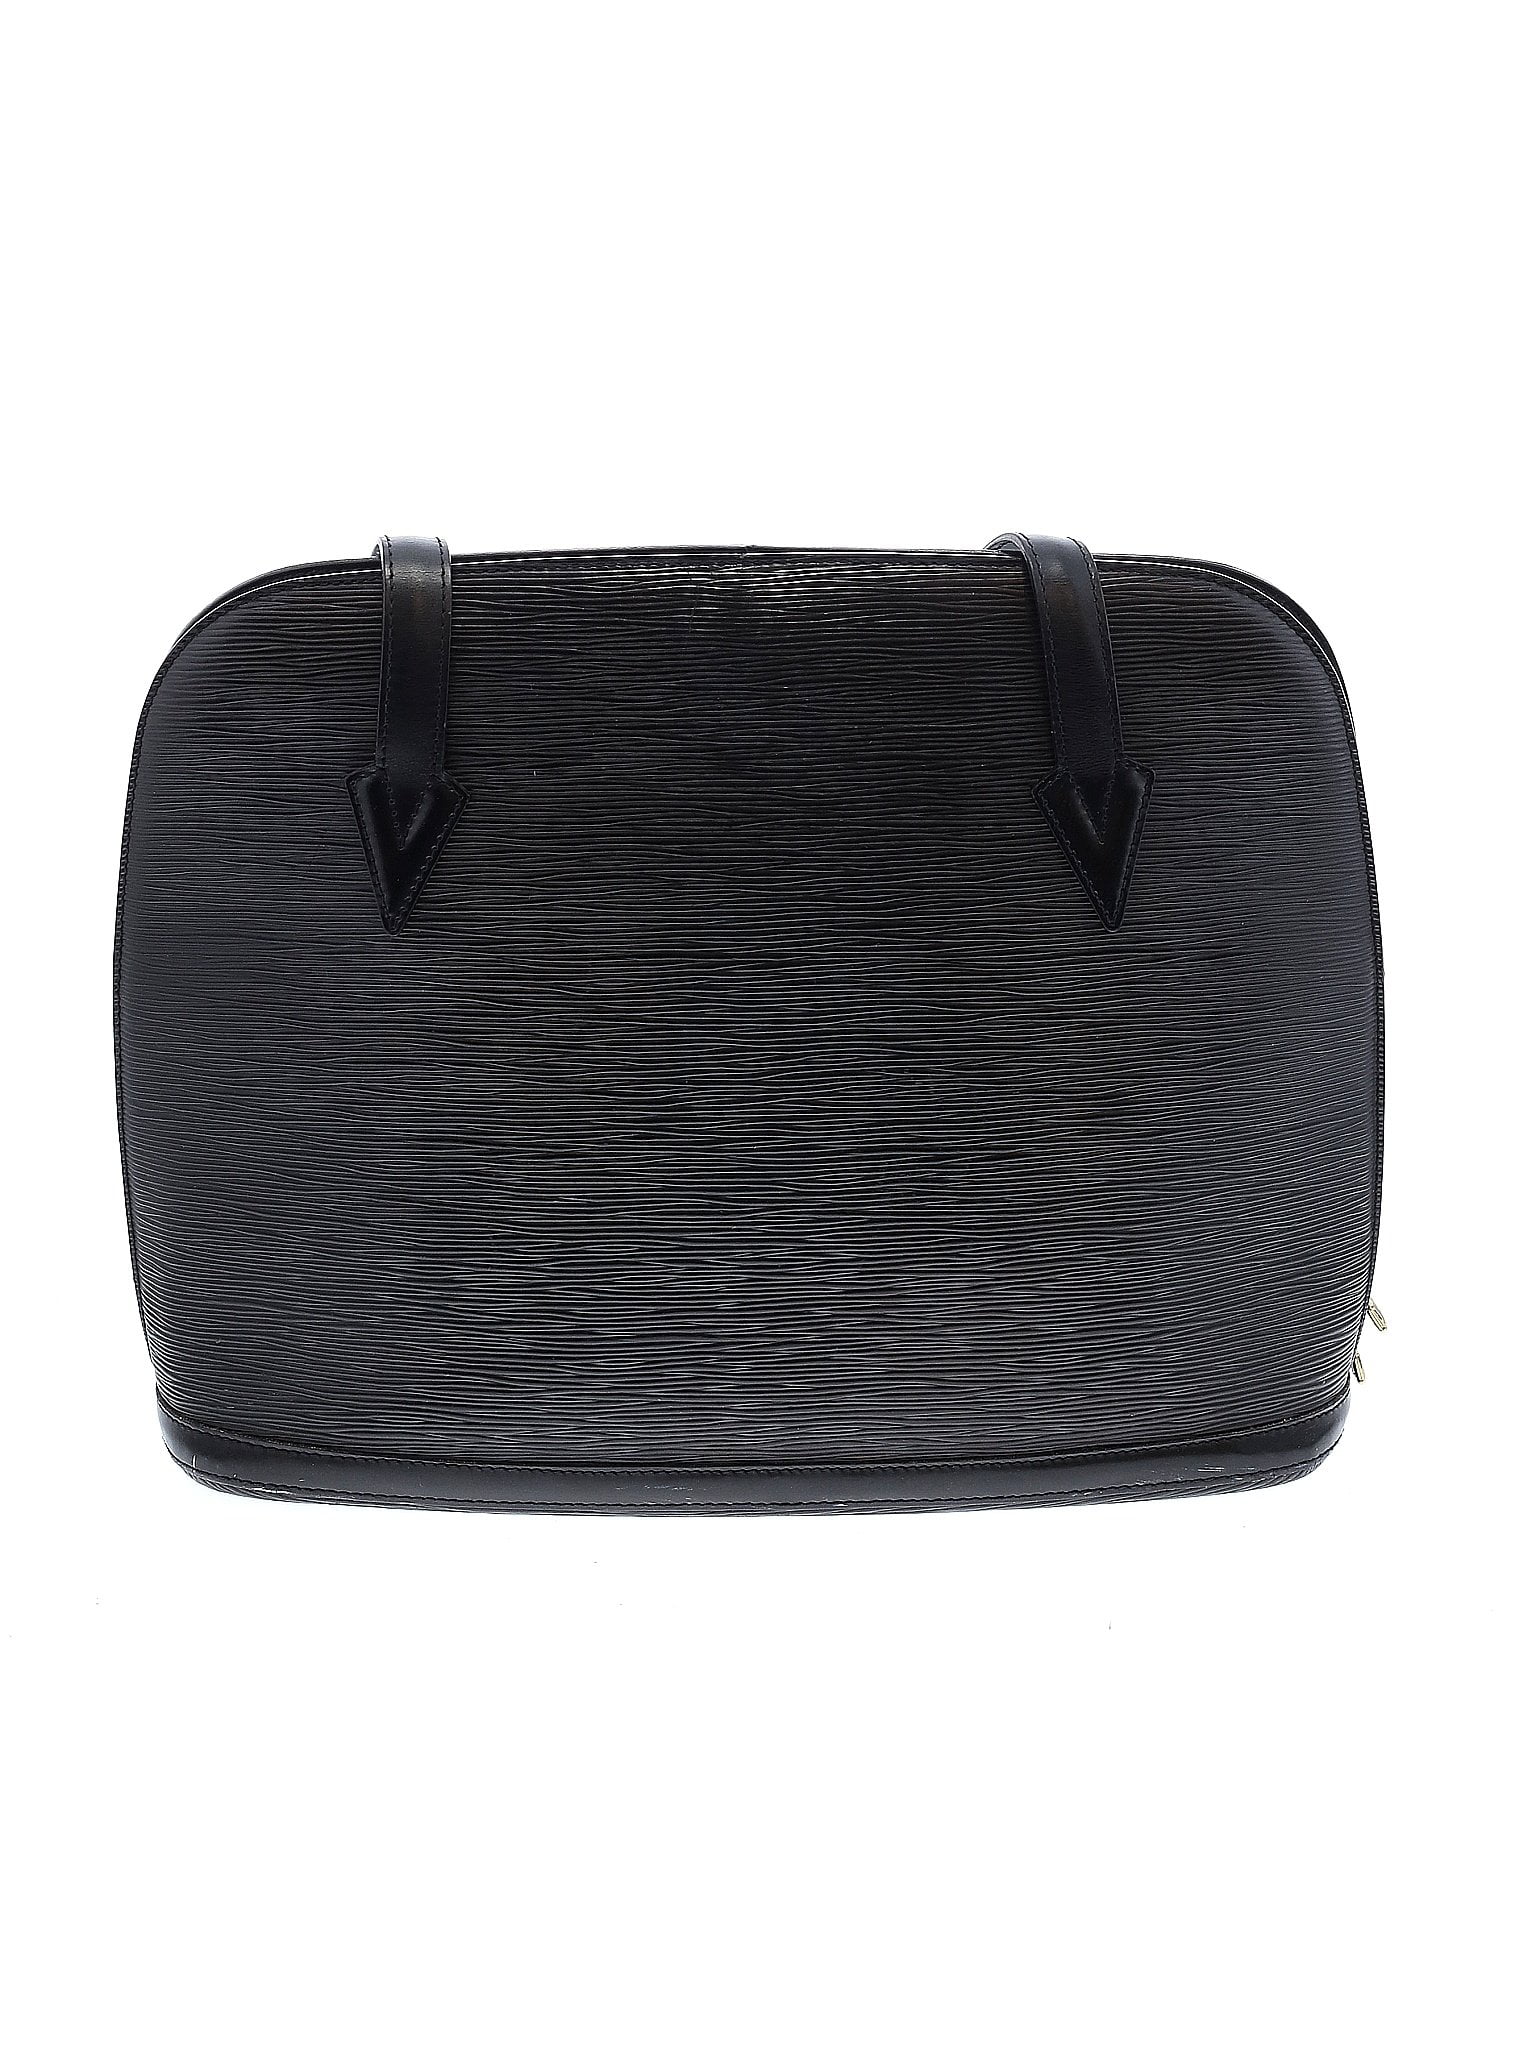 Vintage Louis Vuitton Black Epi Leather Four-Piece Luggage Set